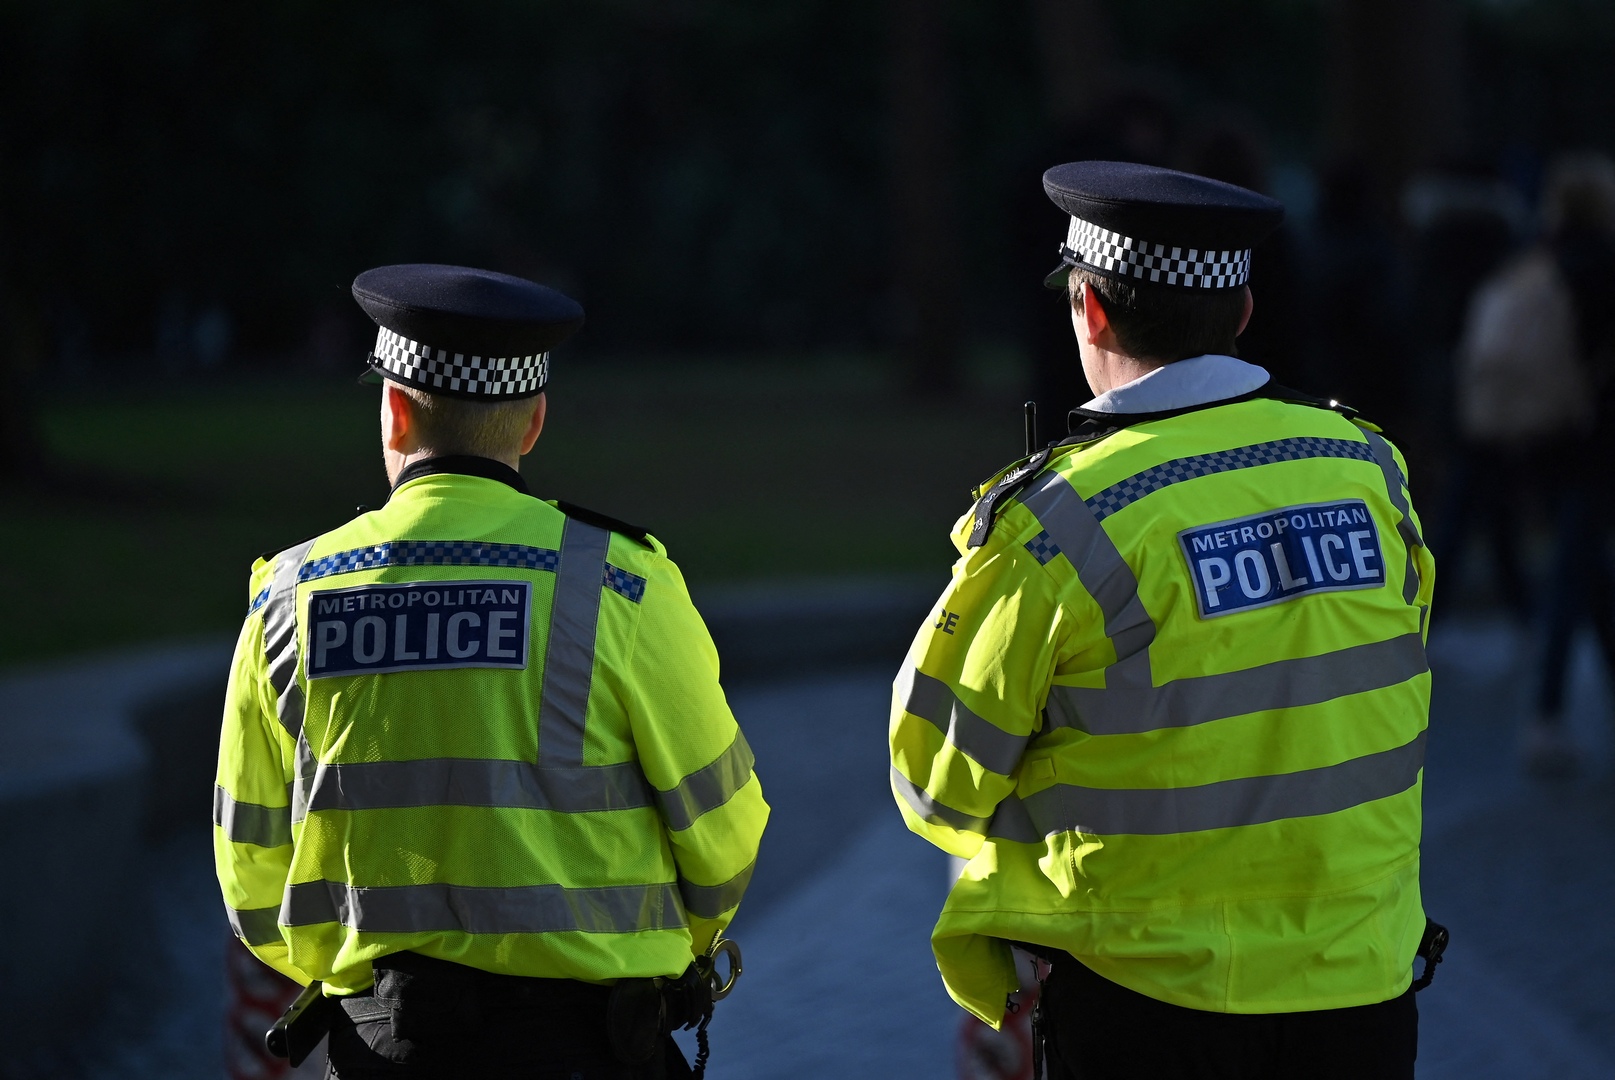 80 شرطيا بريطانيا يتعرضون لإجراءات تأديبية بسبب الاتصال الجنسي بضحايا الجريمة والشهود